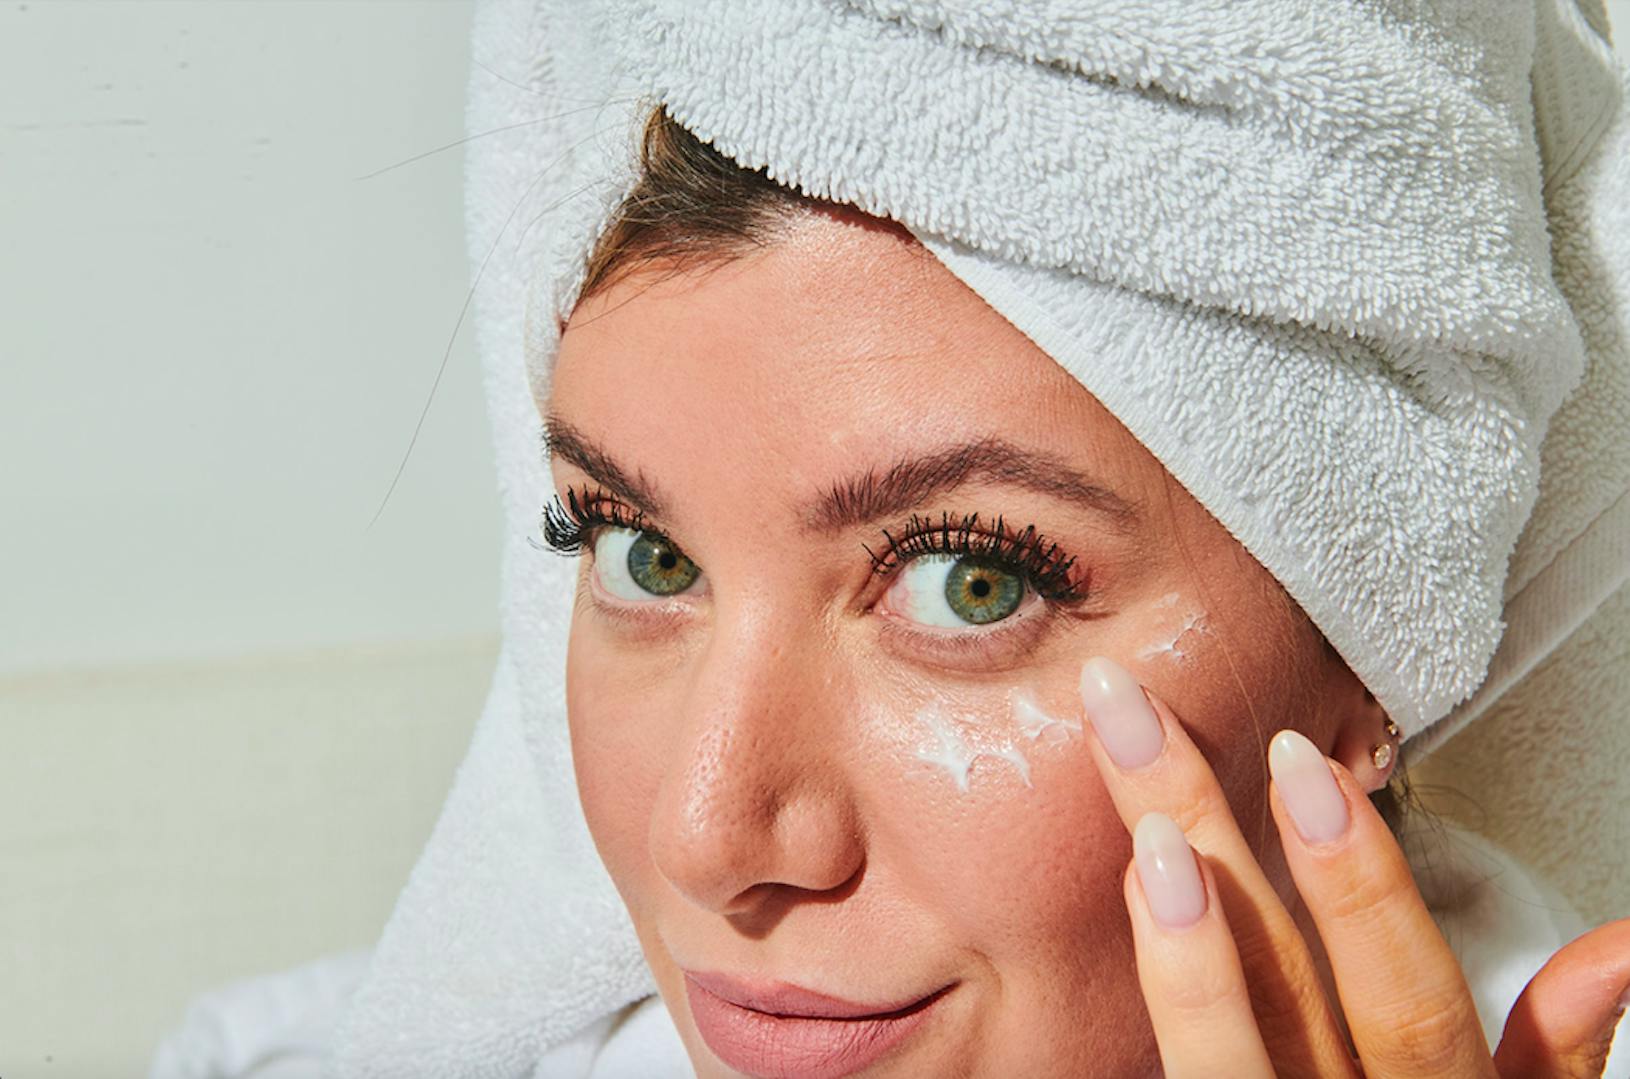 Stephanie Gee in hair towel applying eye cream